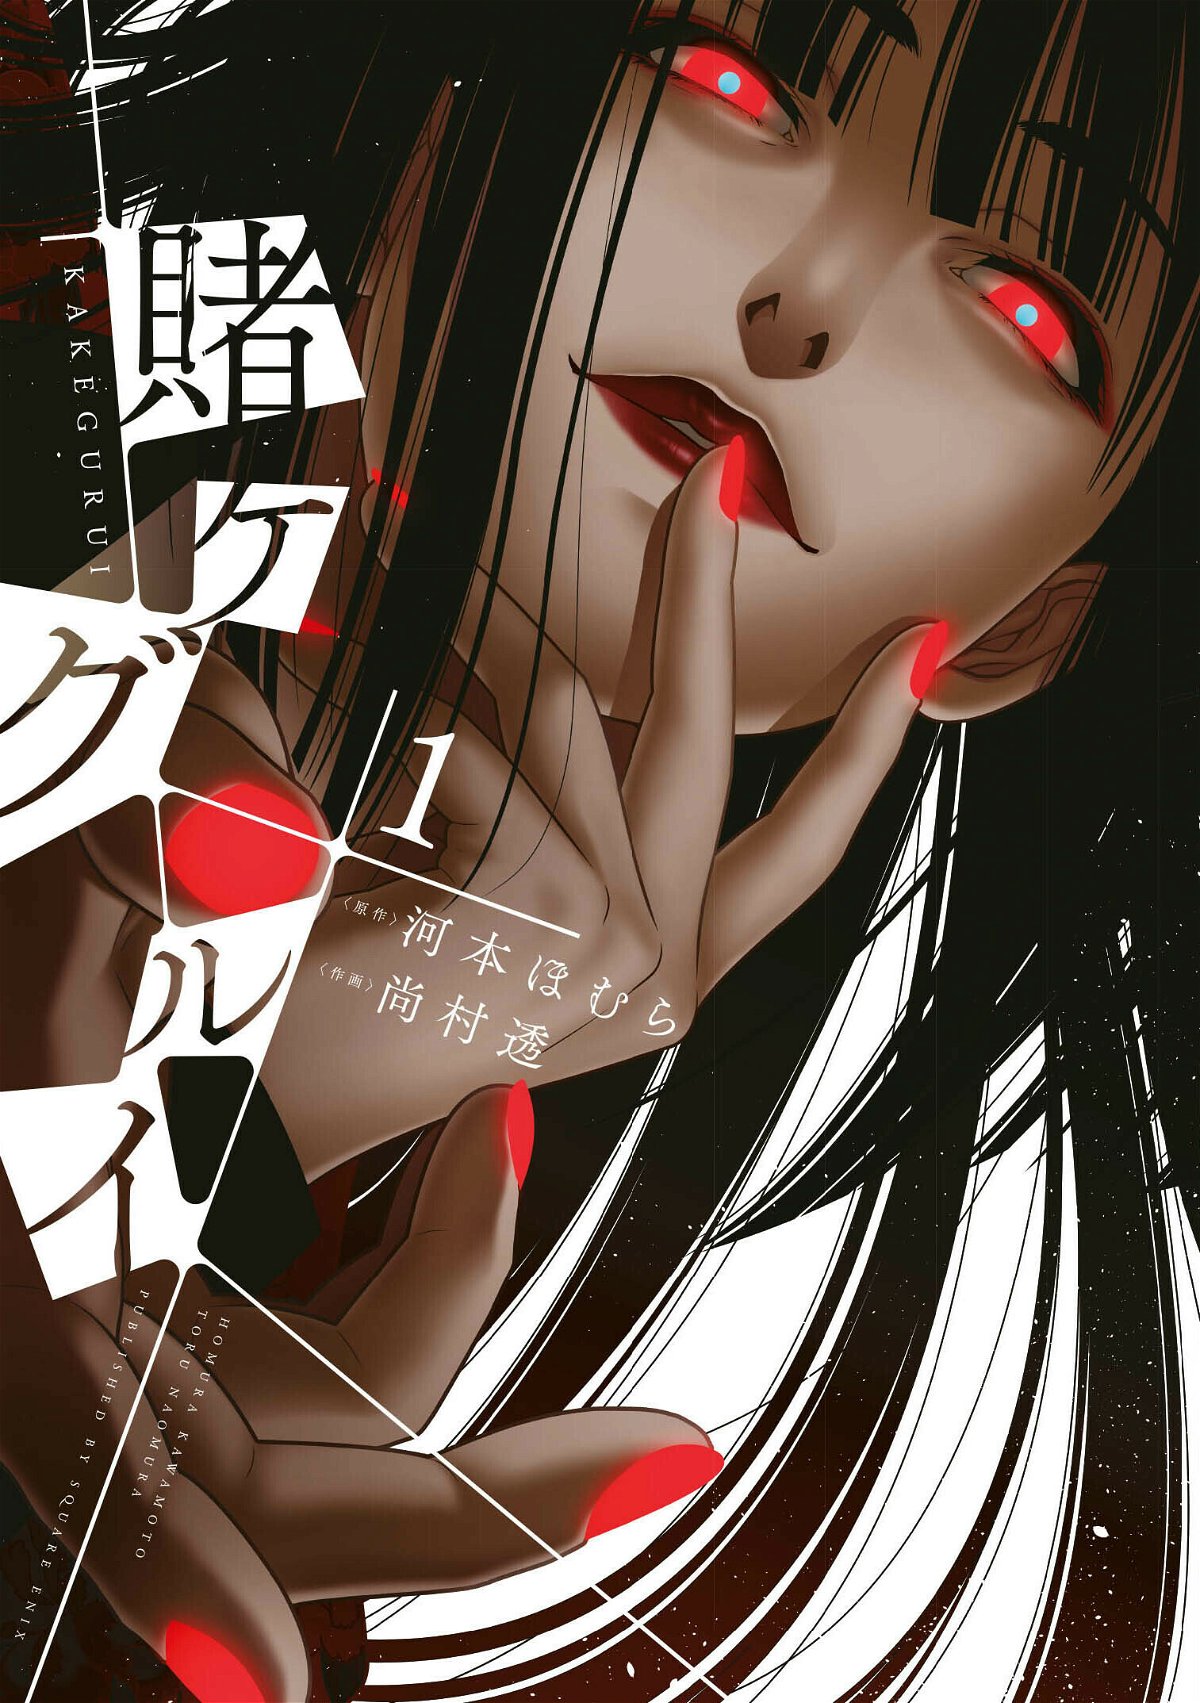 Yumeko è la protagonista della copertina del primo volume di Kakegurui